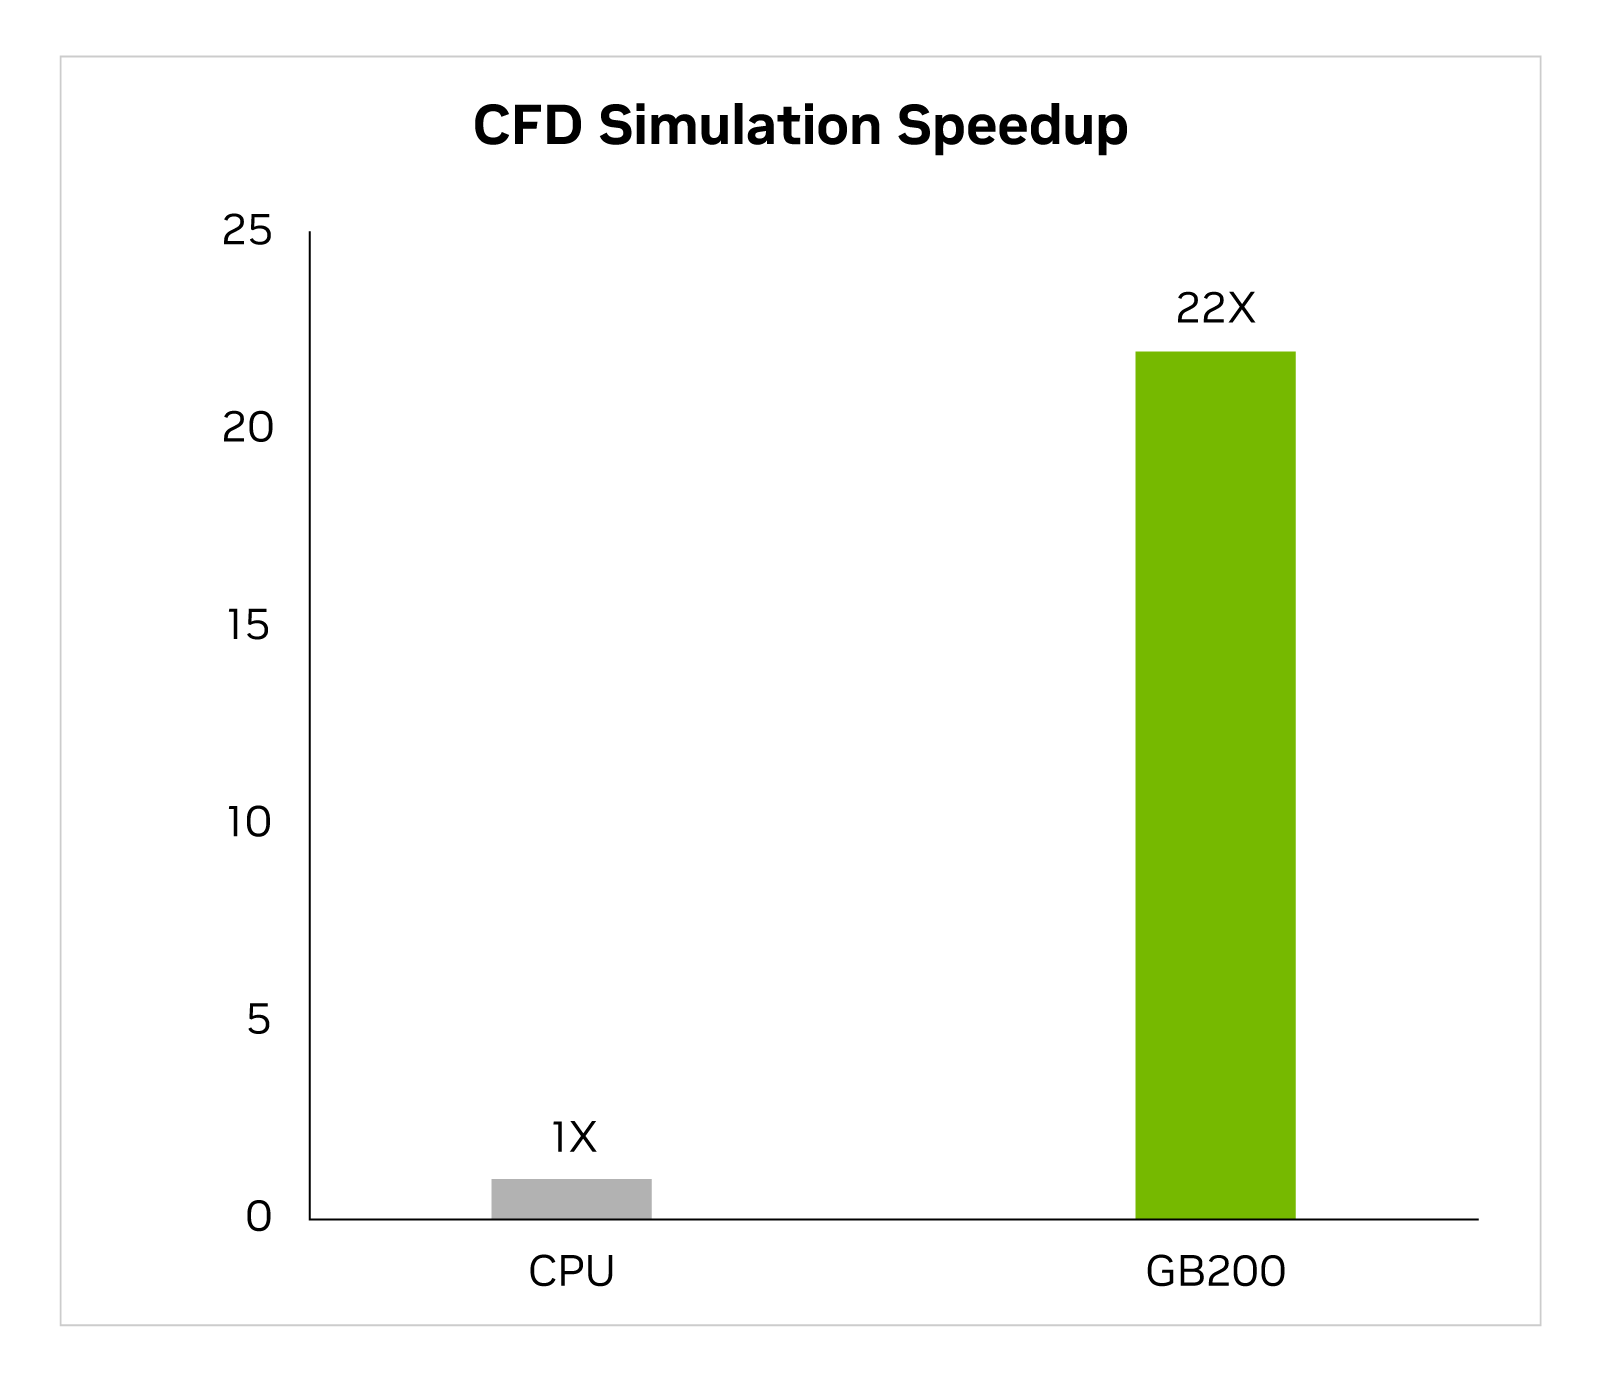 条形图，显示值为1x的CPU和值为22x的GB200。
